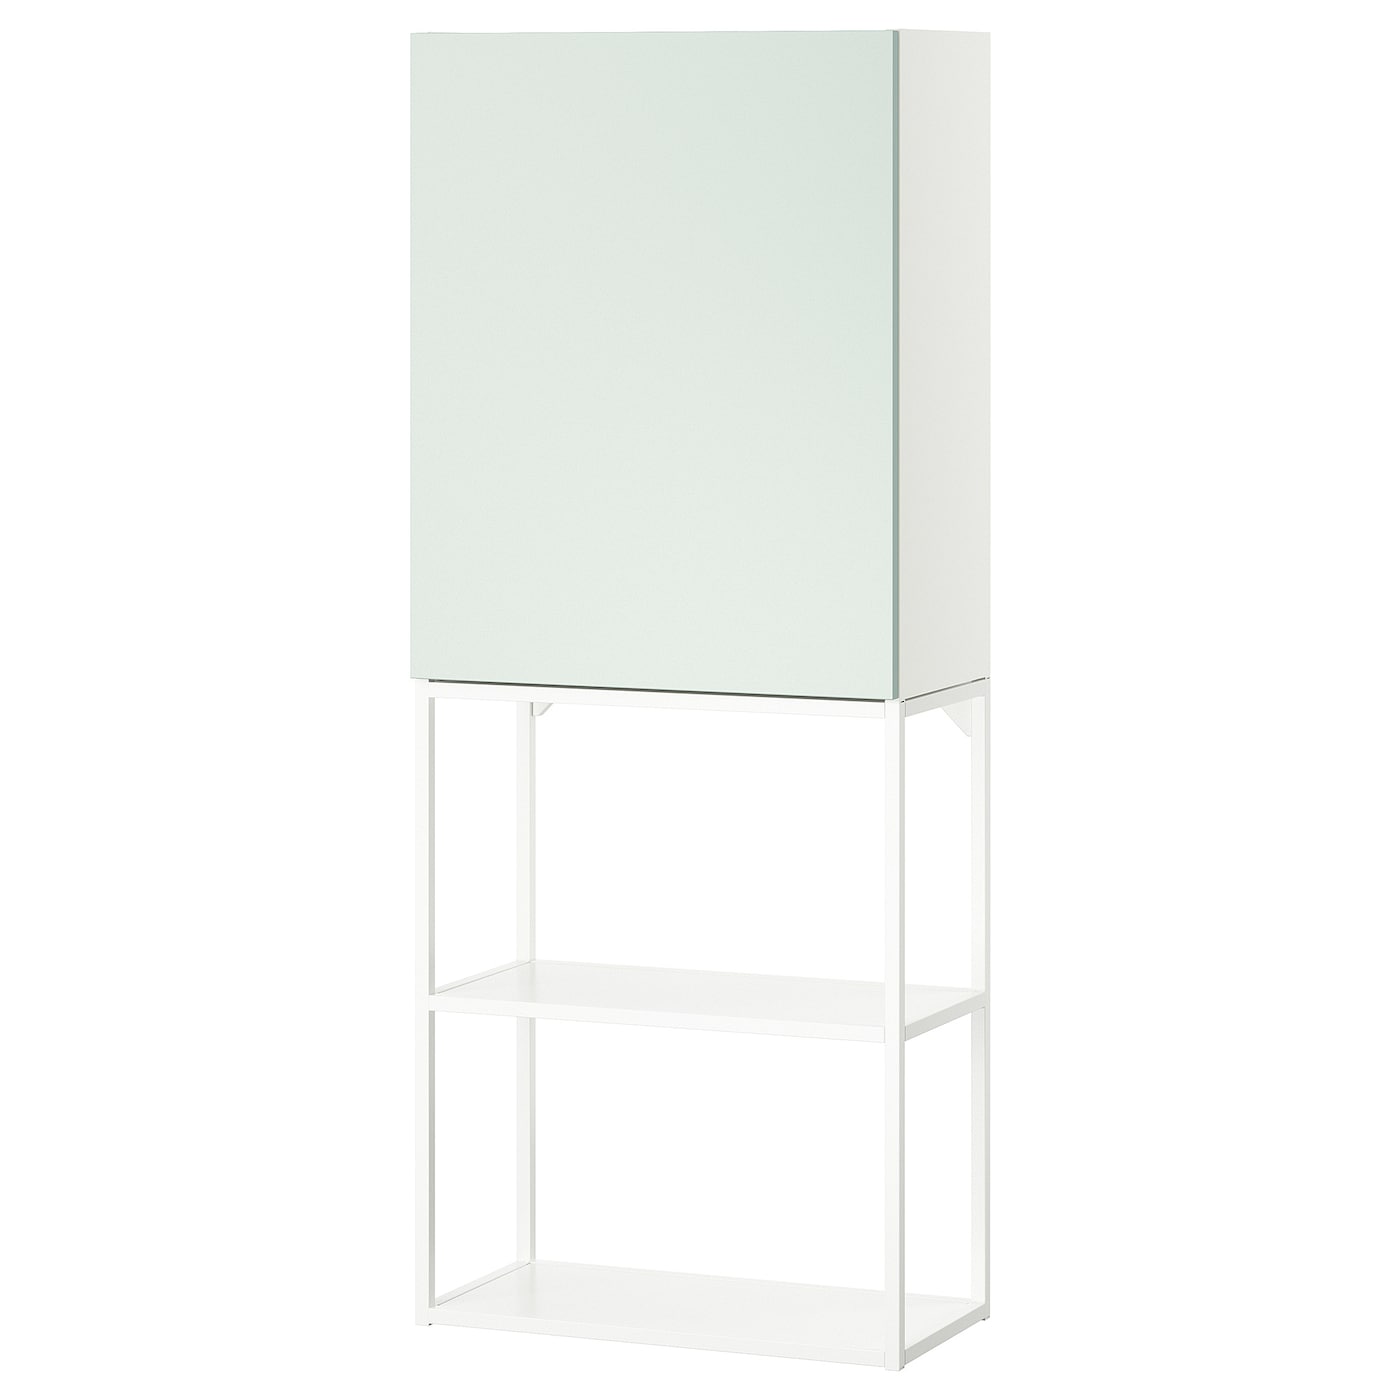 Навесной шкаф - ENHET IKEA/ ЭНХЕТ ИКЕА,   60x32x150 см, белый/серо-зеленый